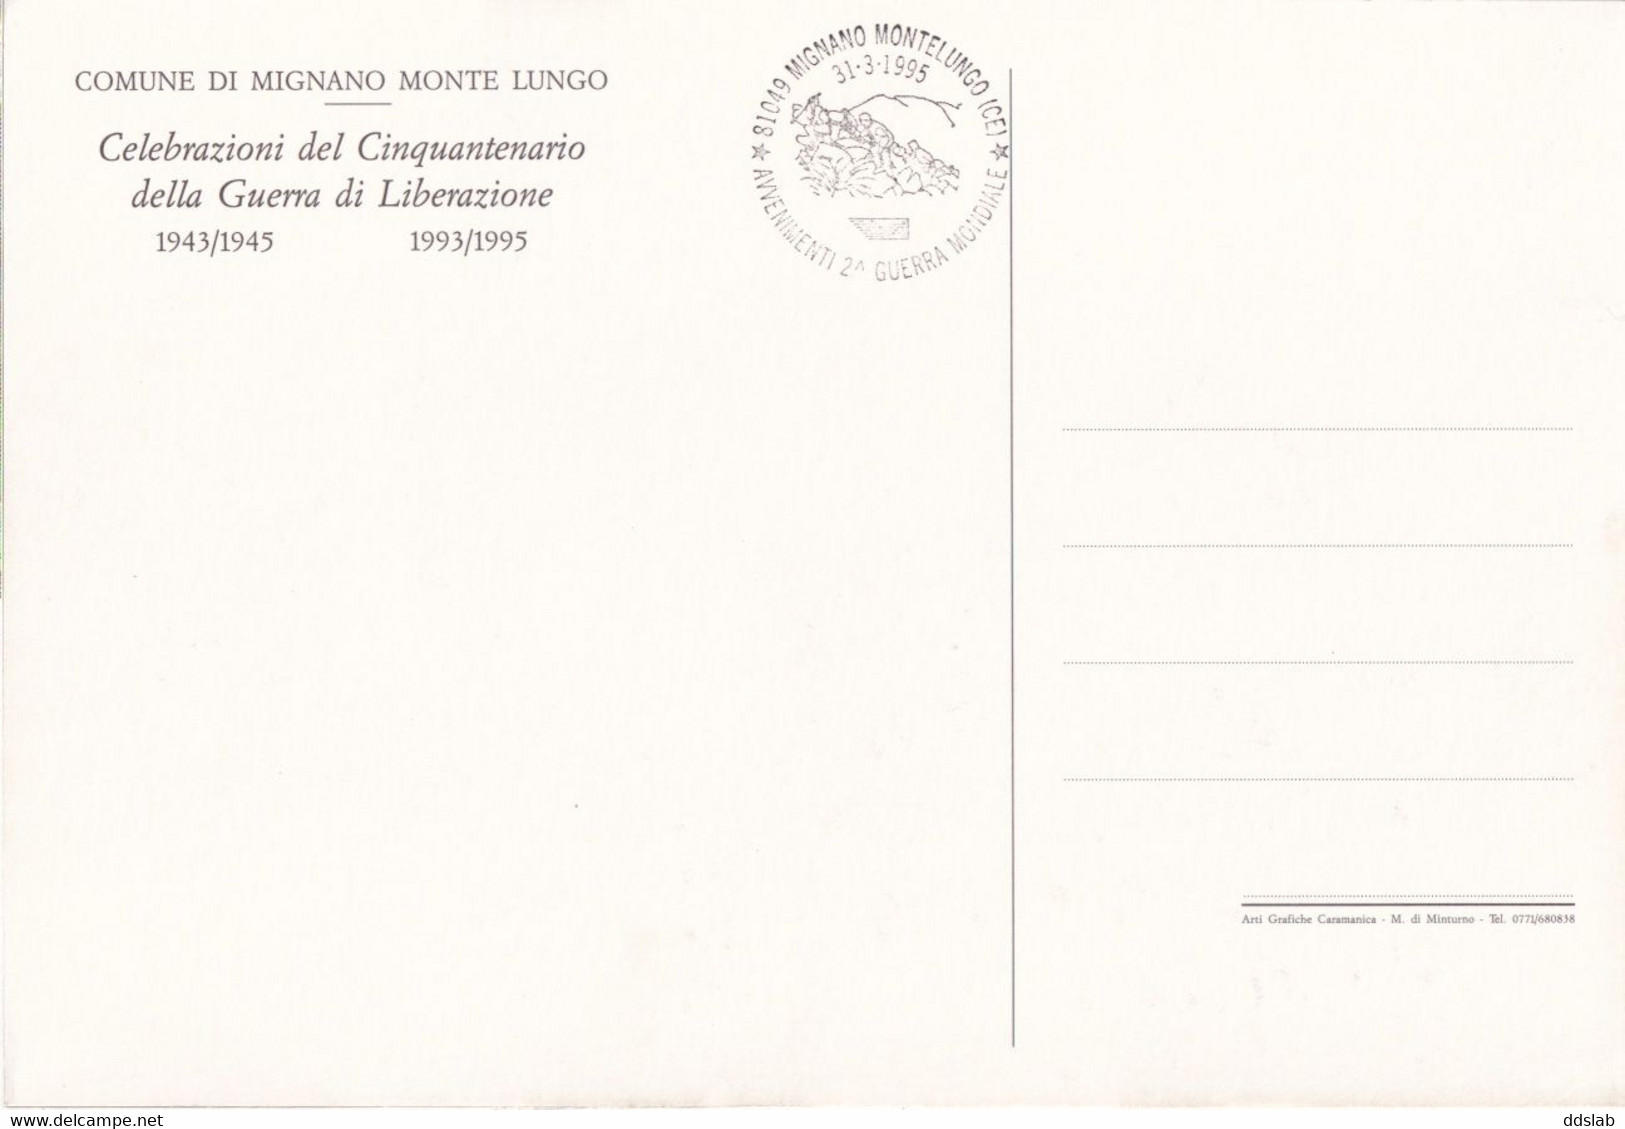 Mignano Monte Lungo (Caserta) - Cartolina 22X15 - Annullo Filatelico 50° Guerra Di Liberazione 1943/1945 - 1993/1995 - Caserta